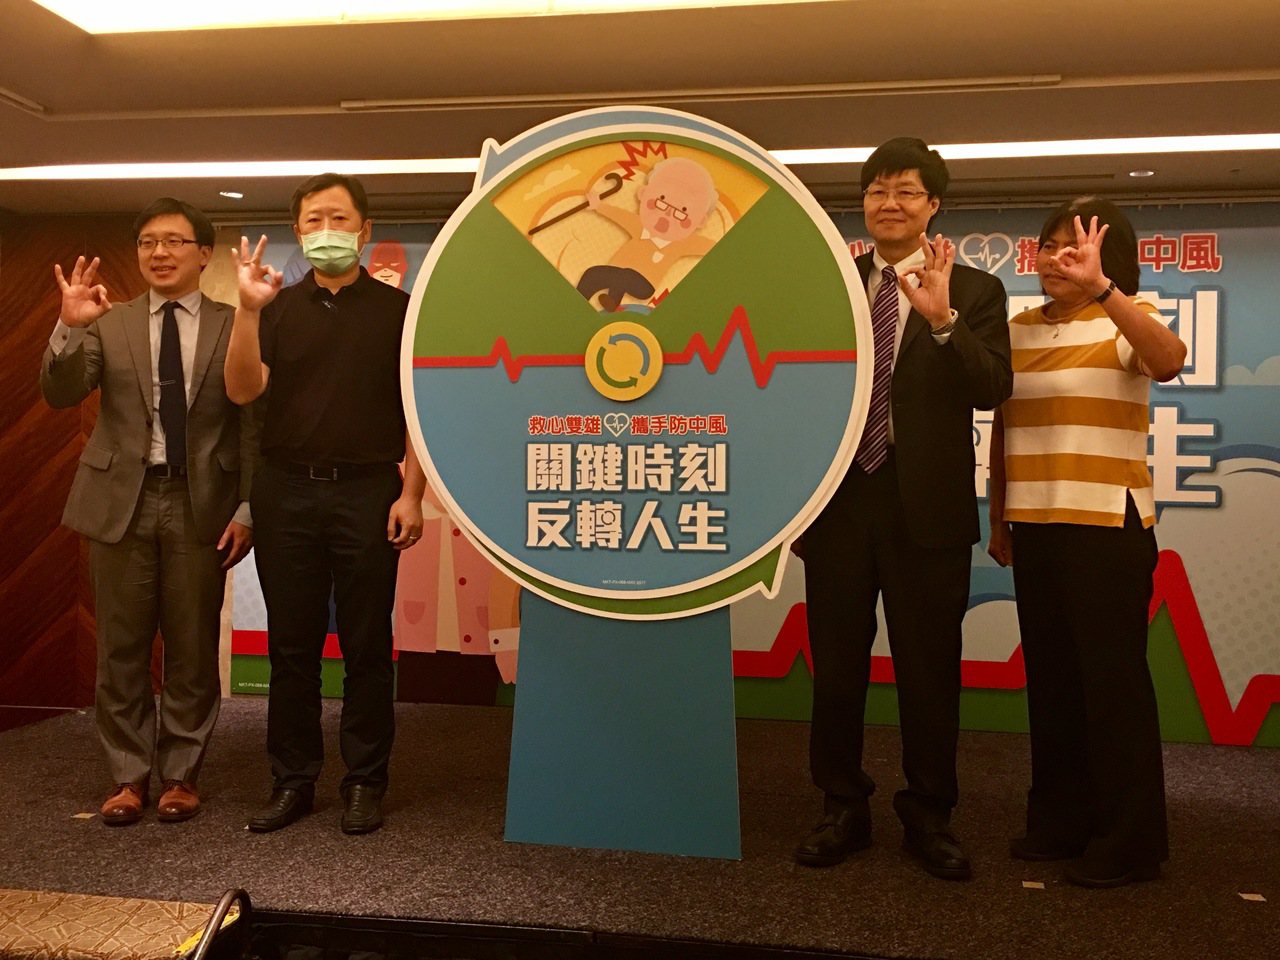 圖左至右分別為李俊偉醫師、黃老先生的兒子、江晨恩醫師、傅維仁醫師。 記者鄧桂芬/攝影